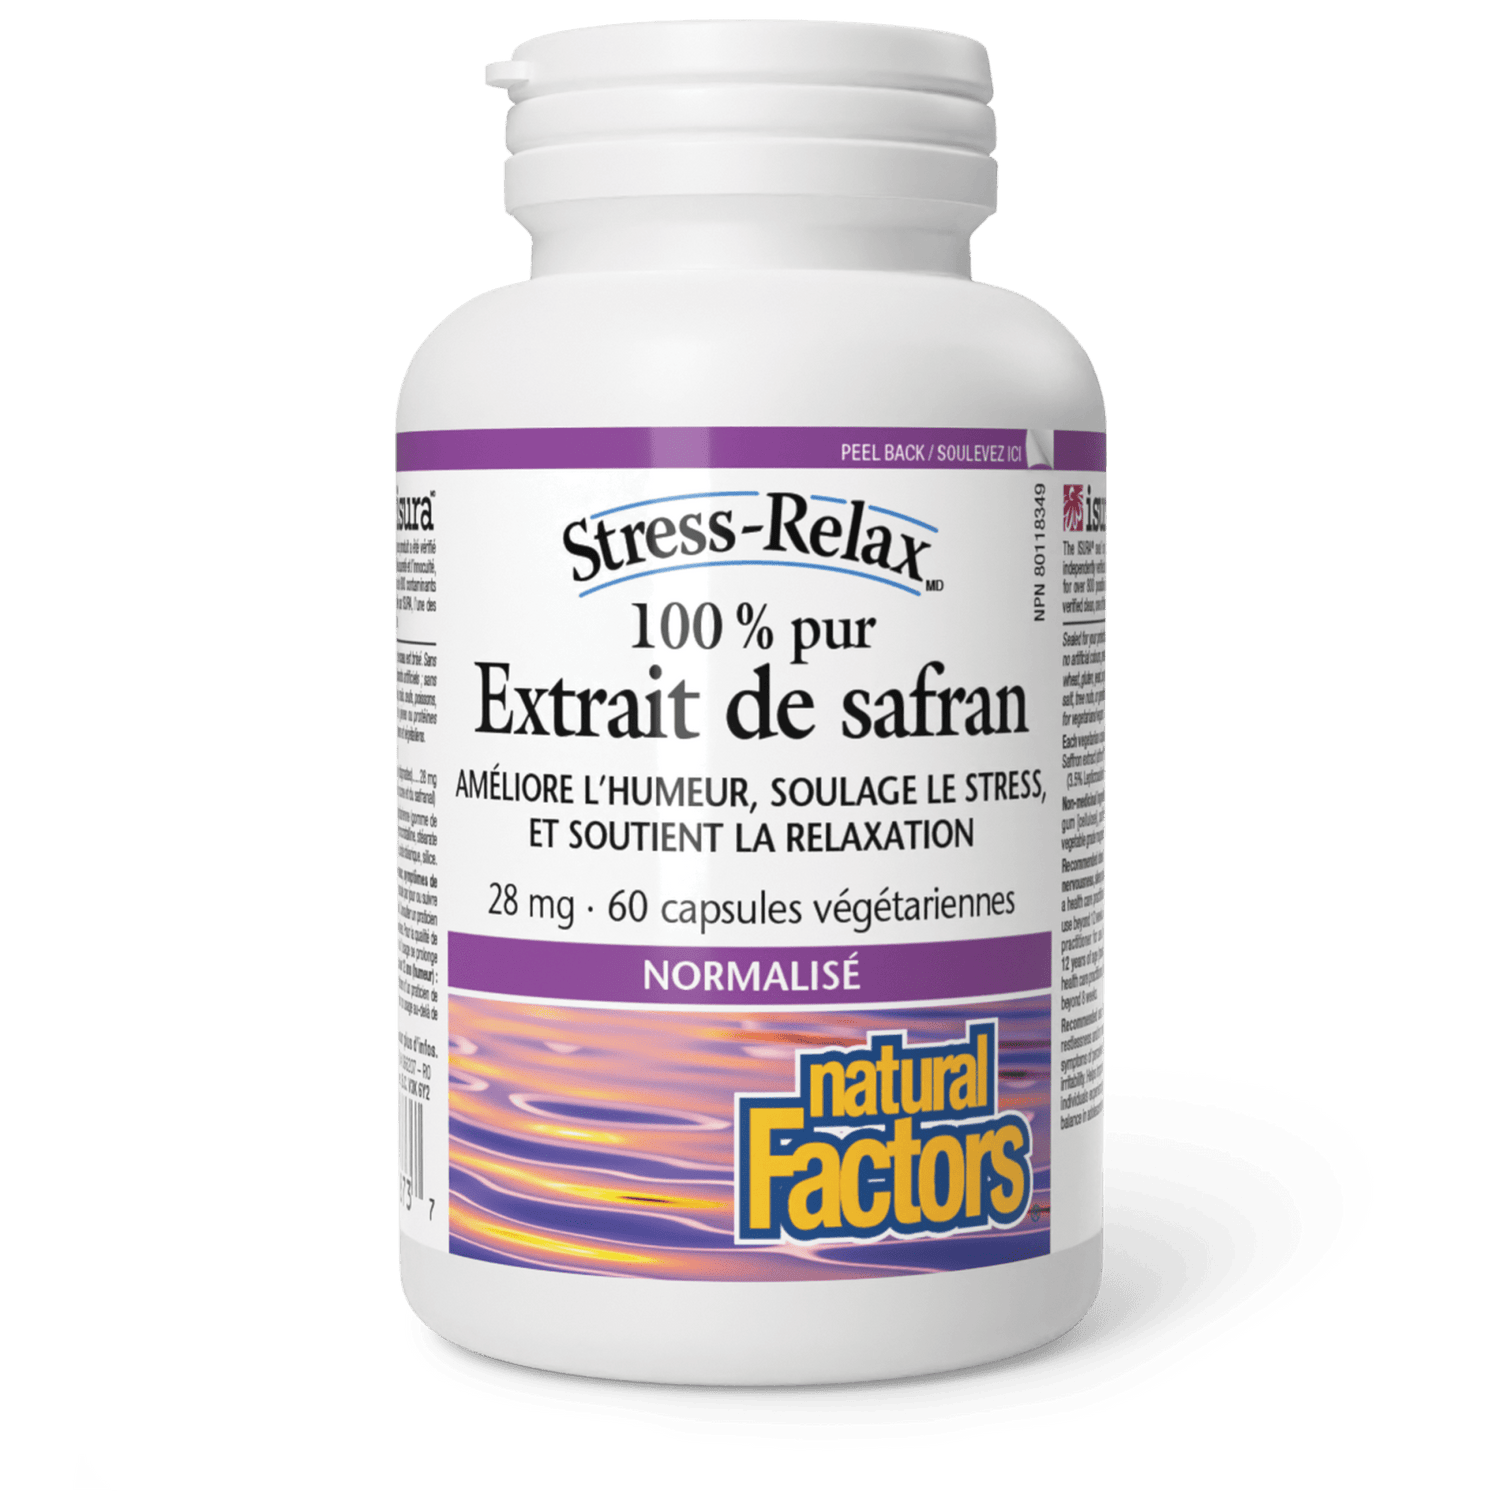 Extrait de safran 100 % pur, Stress-Relax, Natural Factors|v|image|2873